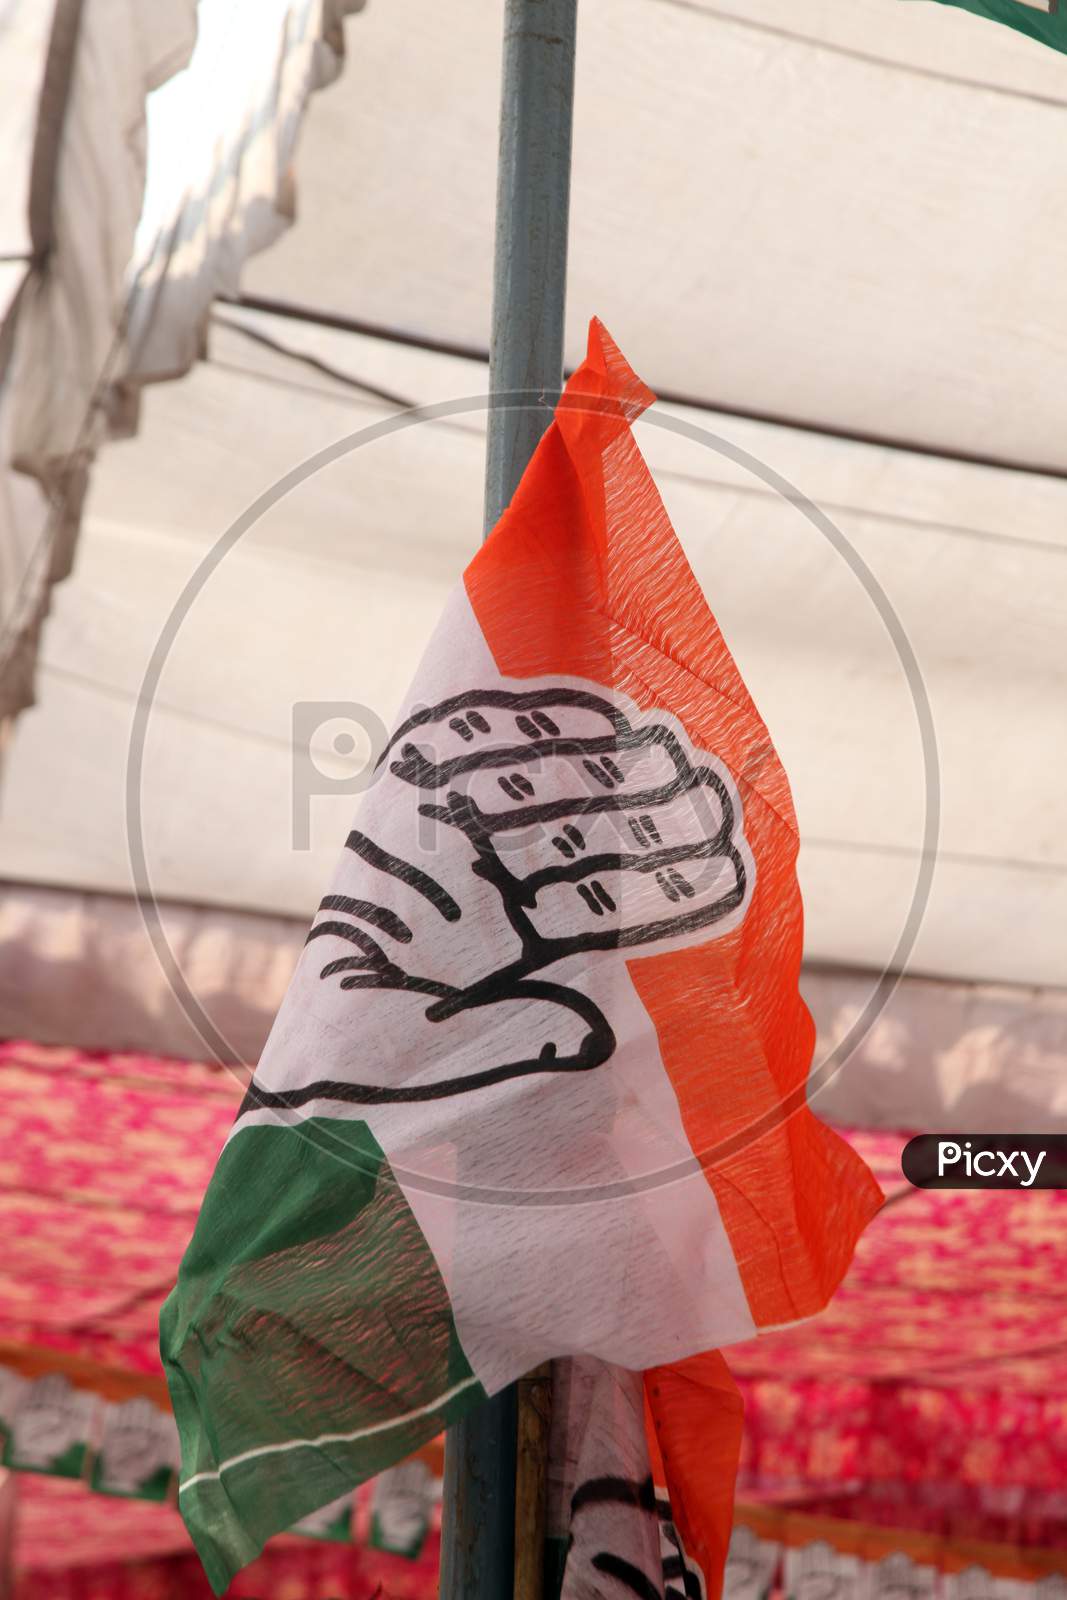 Congress Party Flag